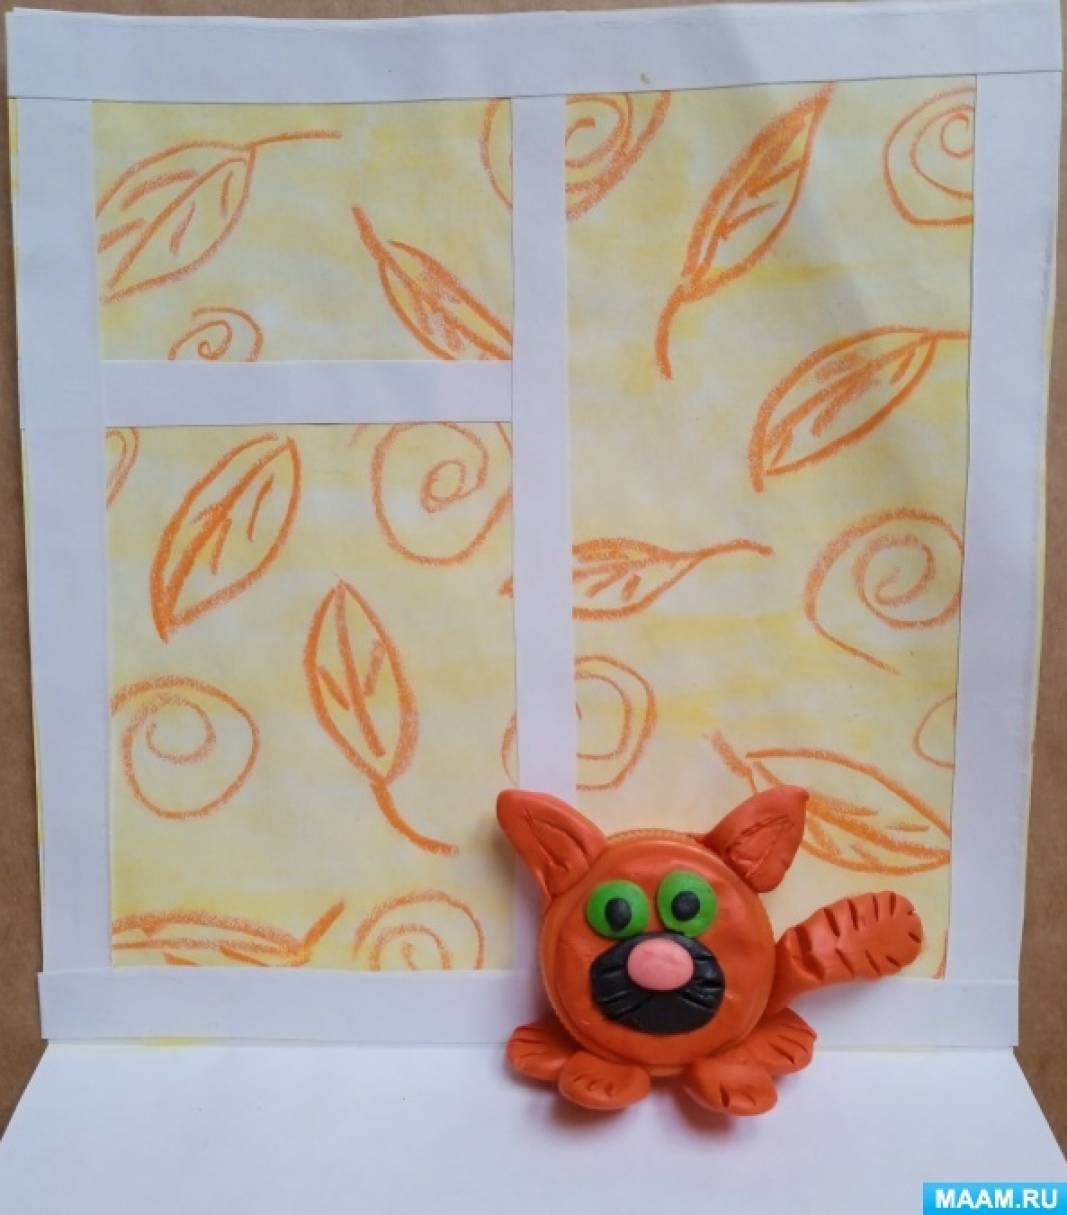 Мастер-класс «Кот Рыжик» по изготовлению поделки из бросового материала и пластилина ко Дню оранжевого цвета на МAAM